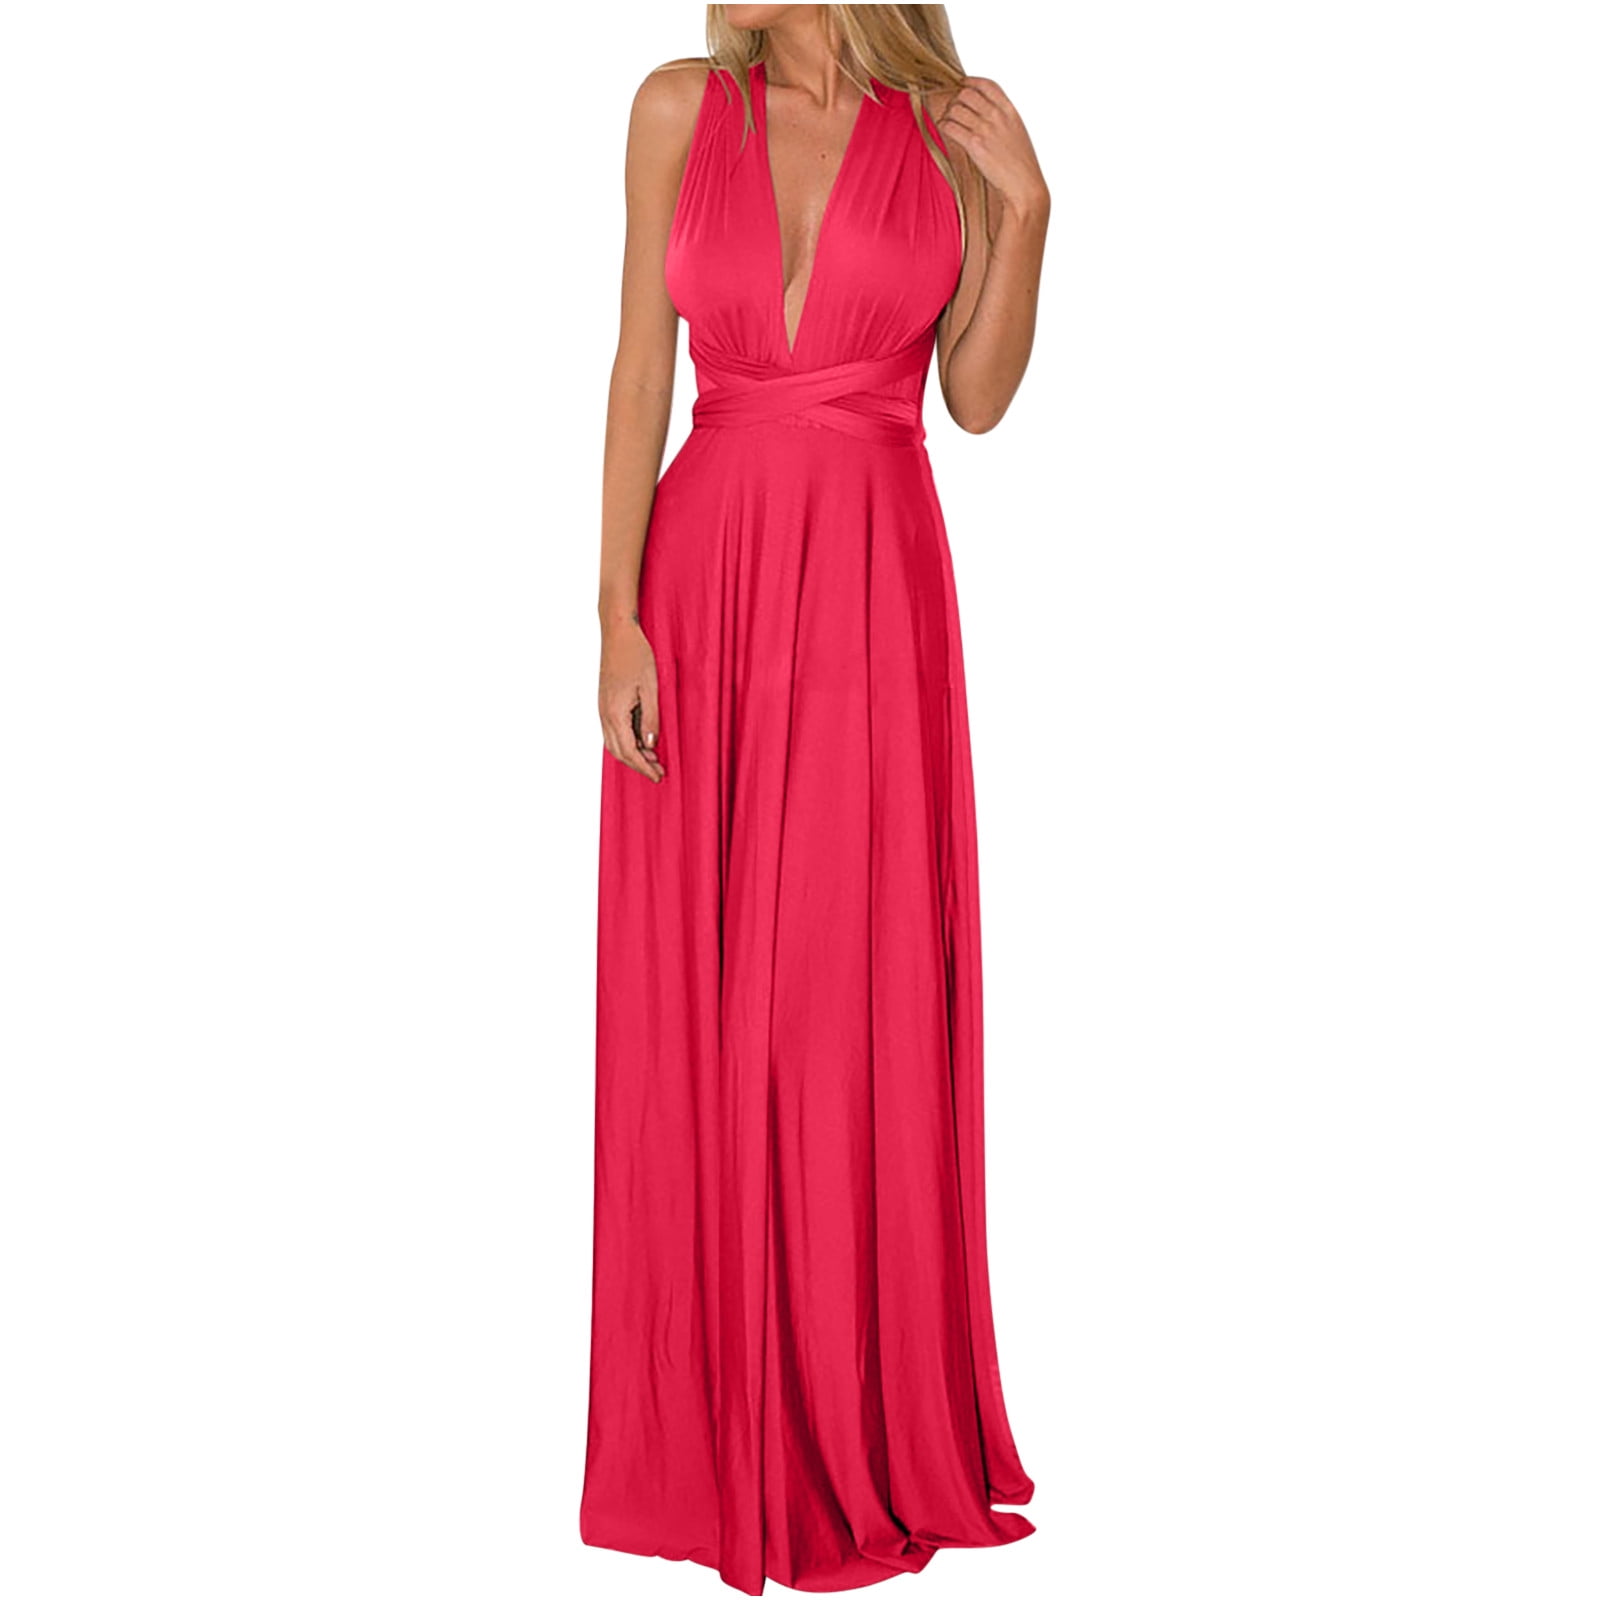 RYDCOT Evening Dresses for Women Elegant Classy Sleeveless V-Neck Cross ...